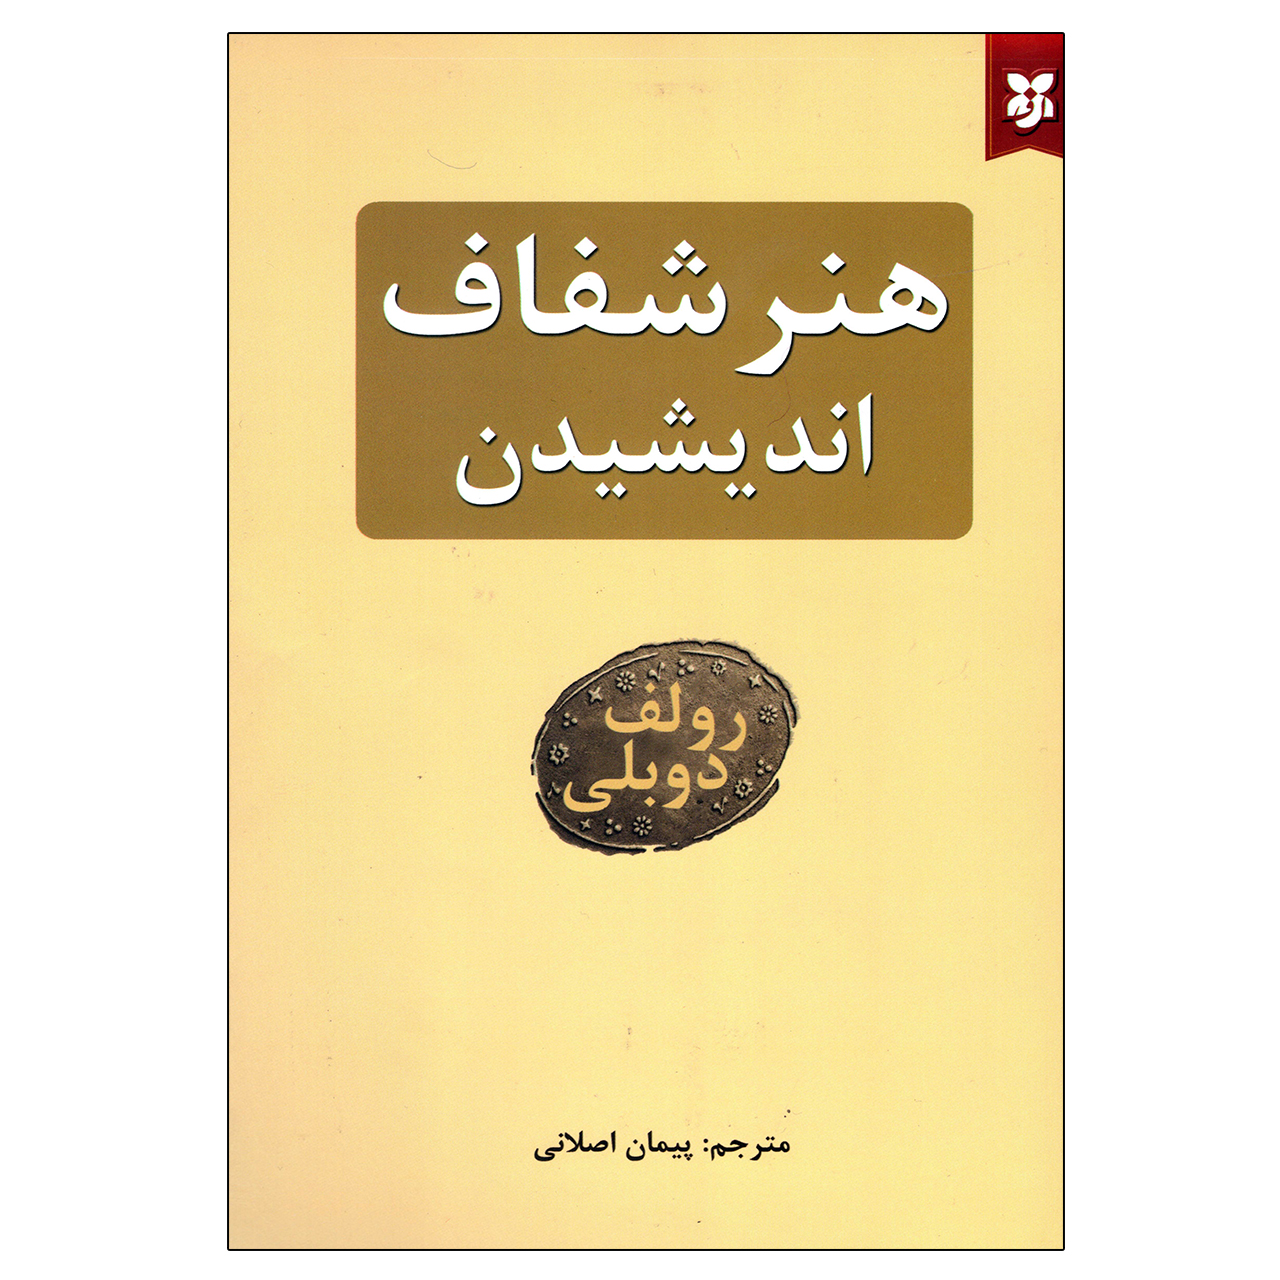 آنباکس کتاب هنر شفاف اندیشیدن اثر رولف دوبلی نشر نیک فرجام توسط حسن روزبه در تاریخ ۲۱ فروردین ۱۴۰۰